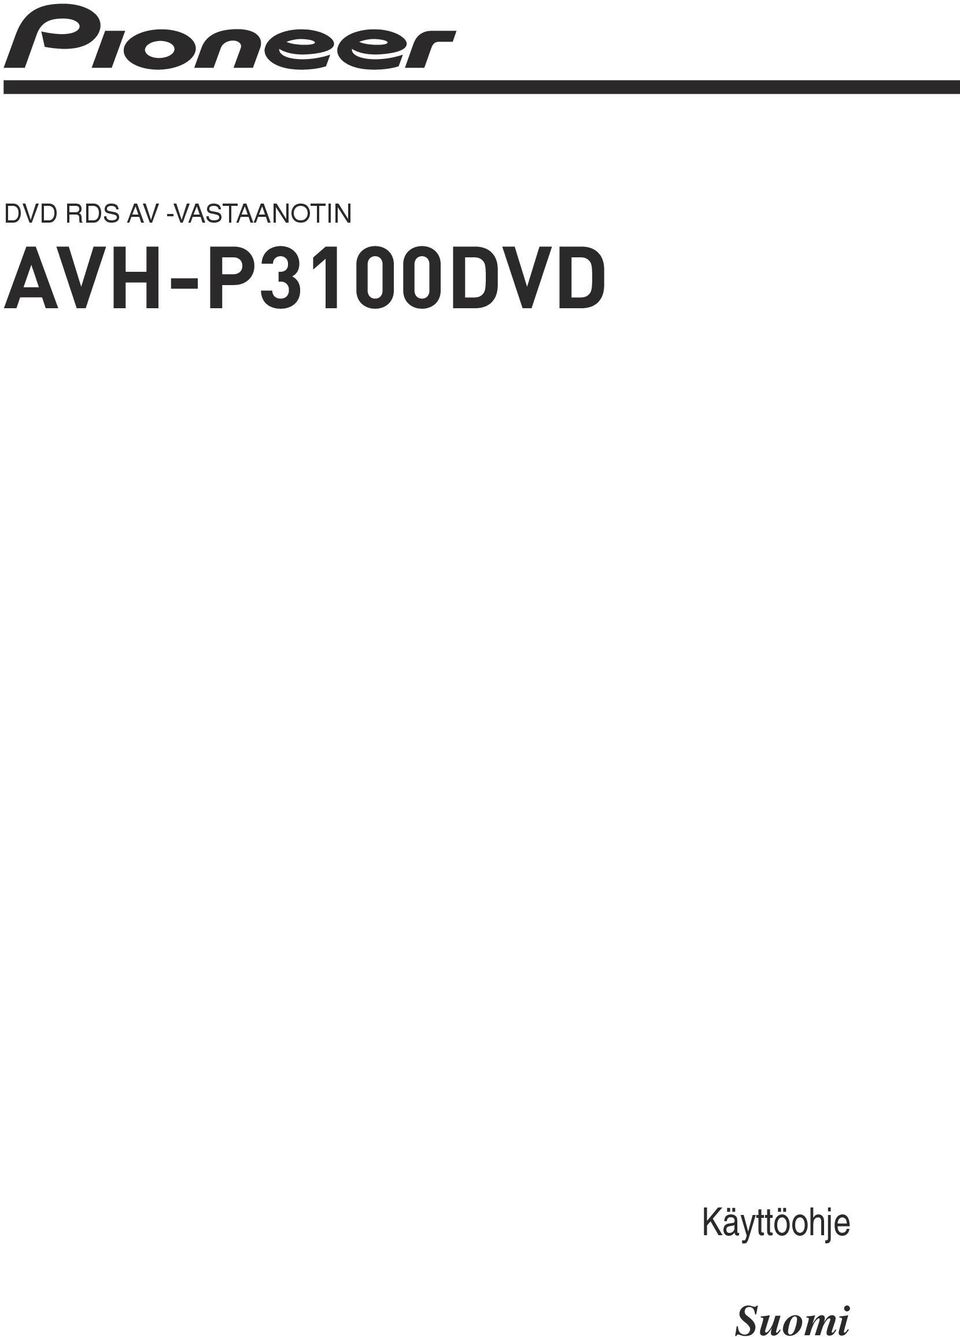 AVH-P3100DVD